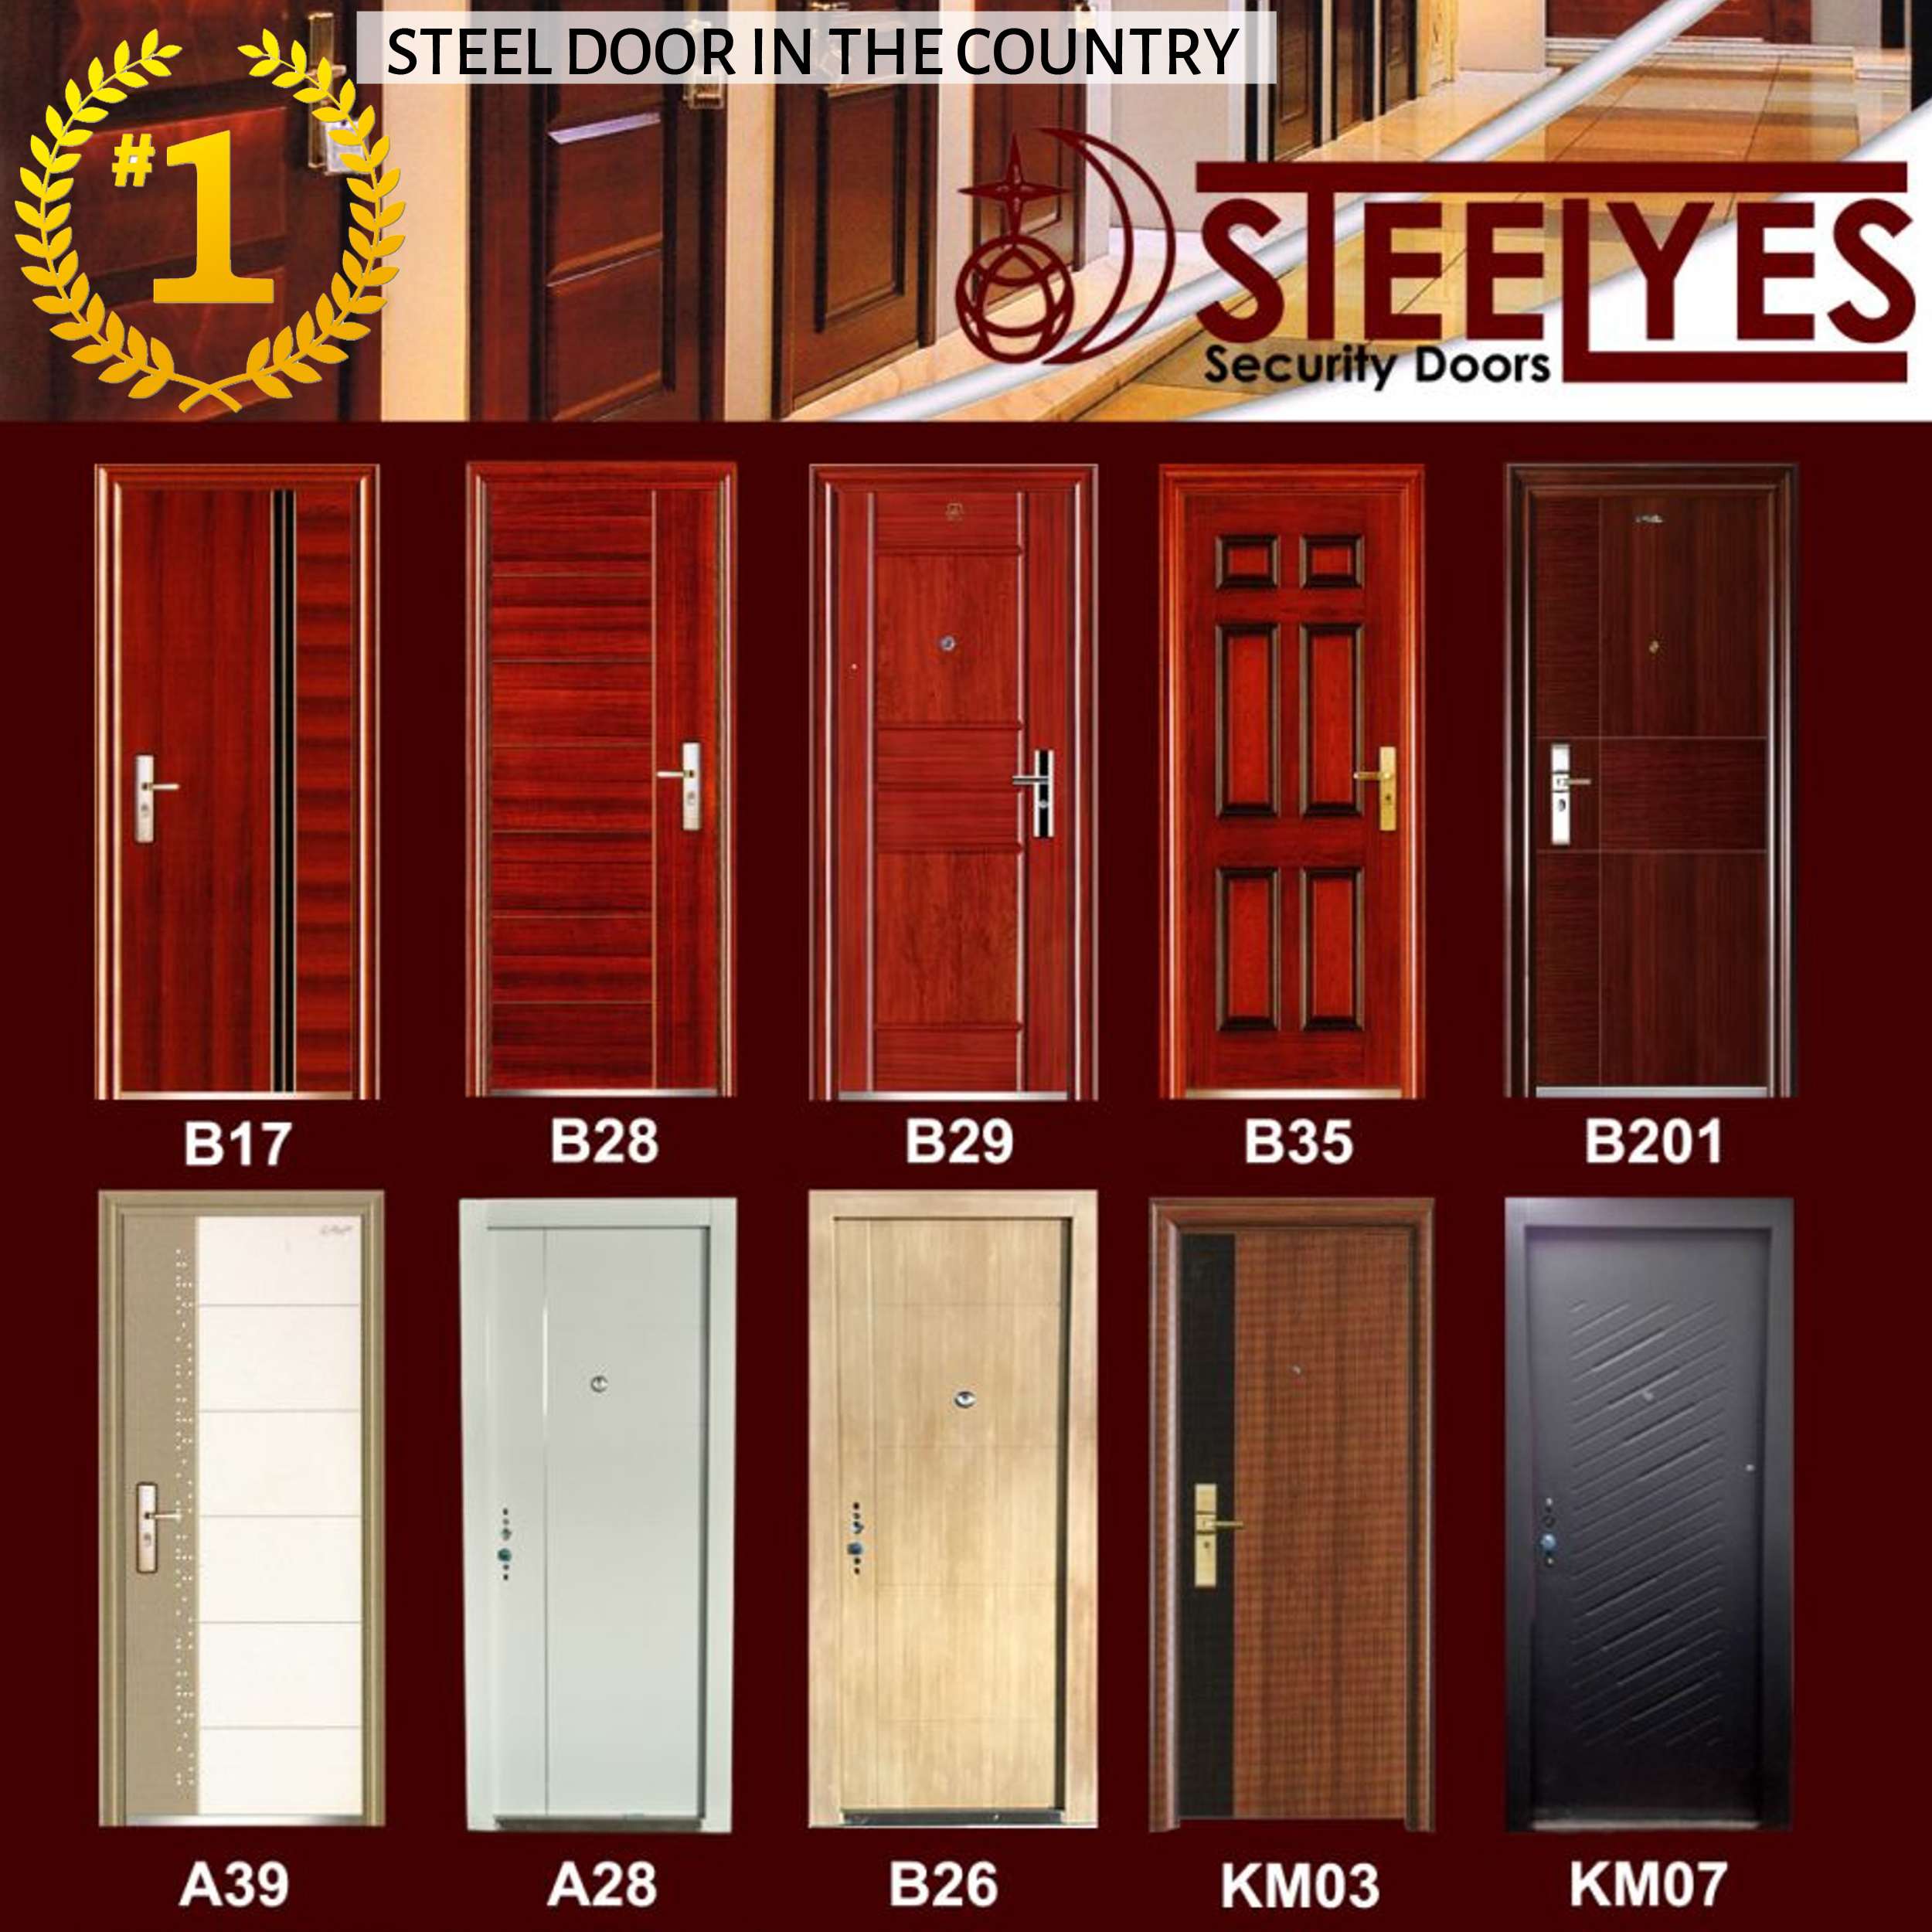 No.1 Steel Door in the country